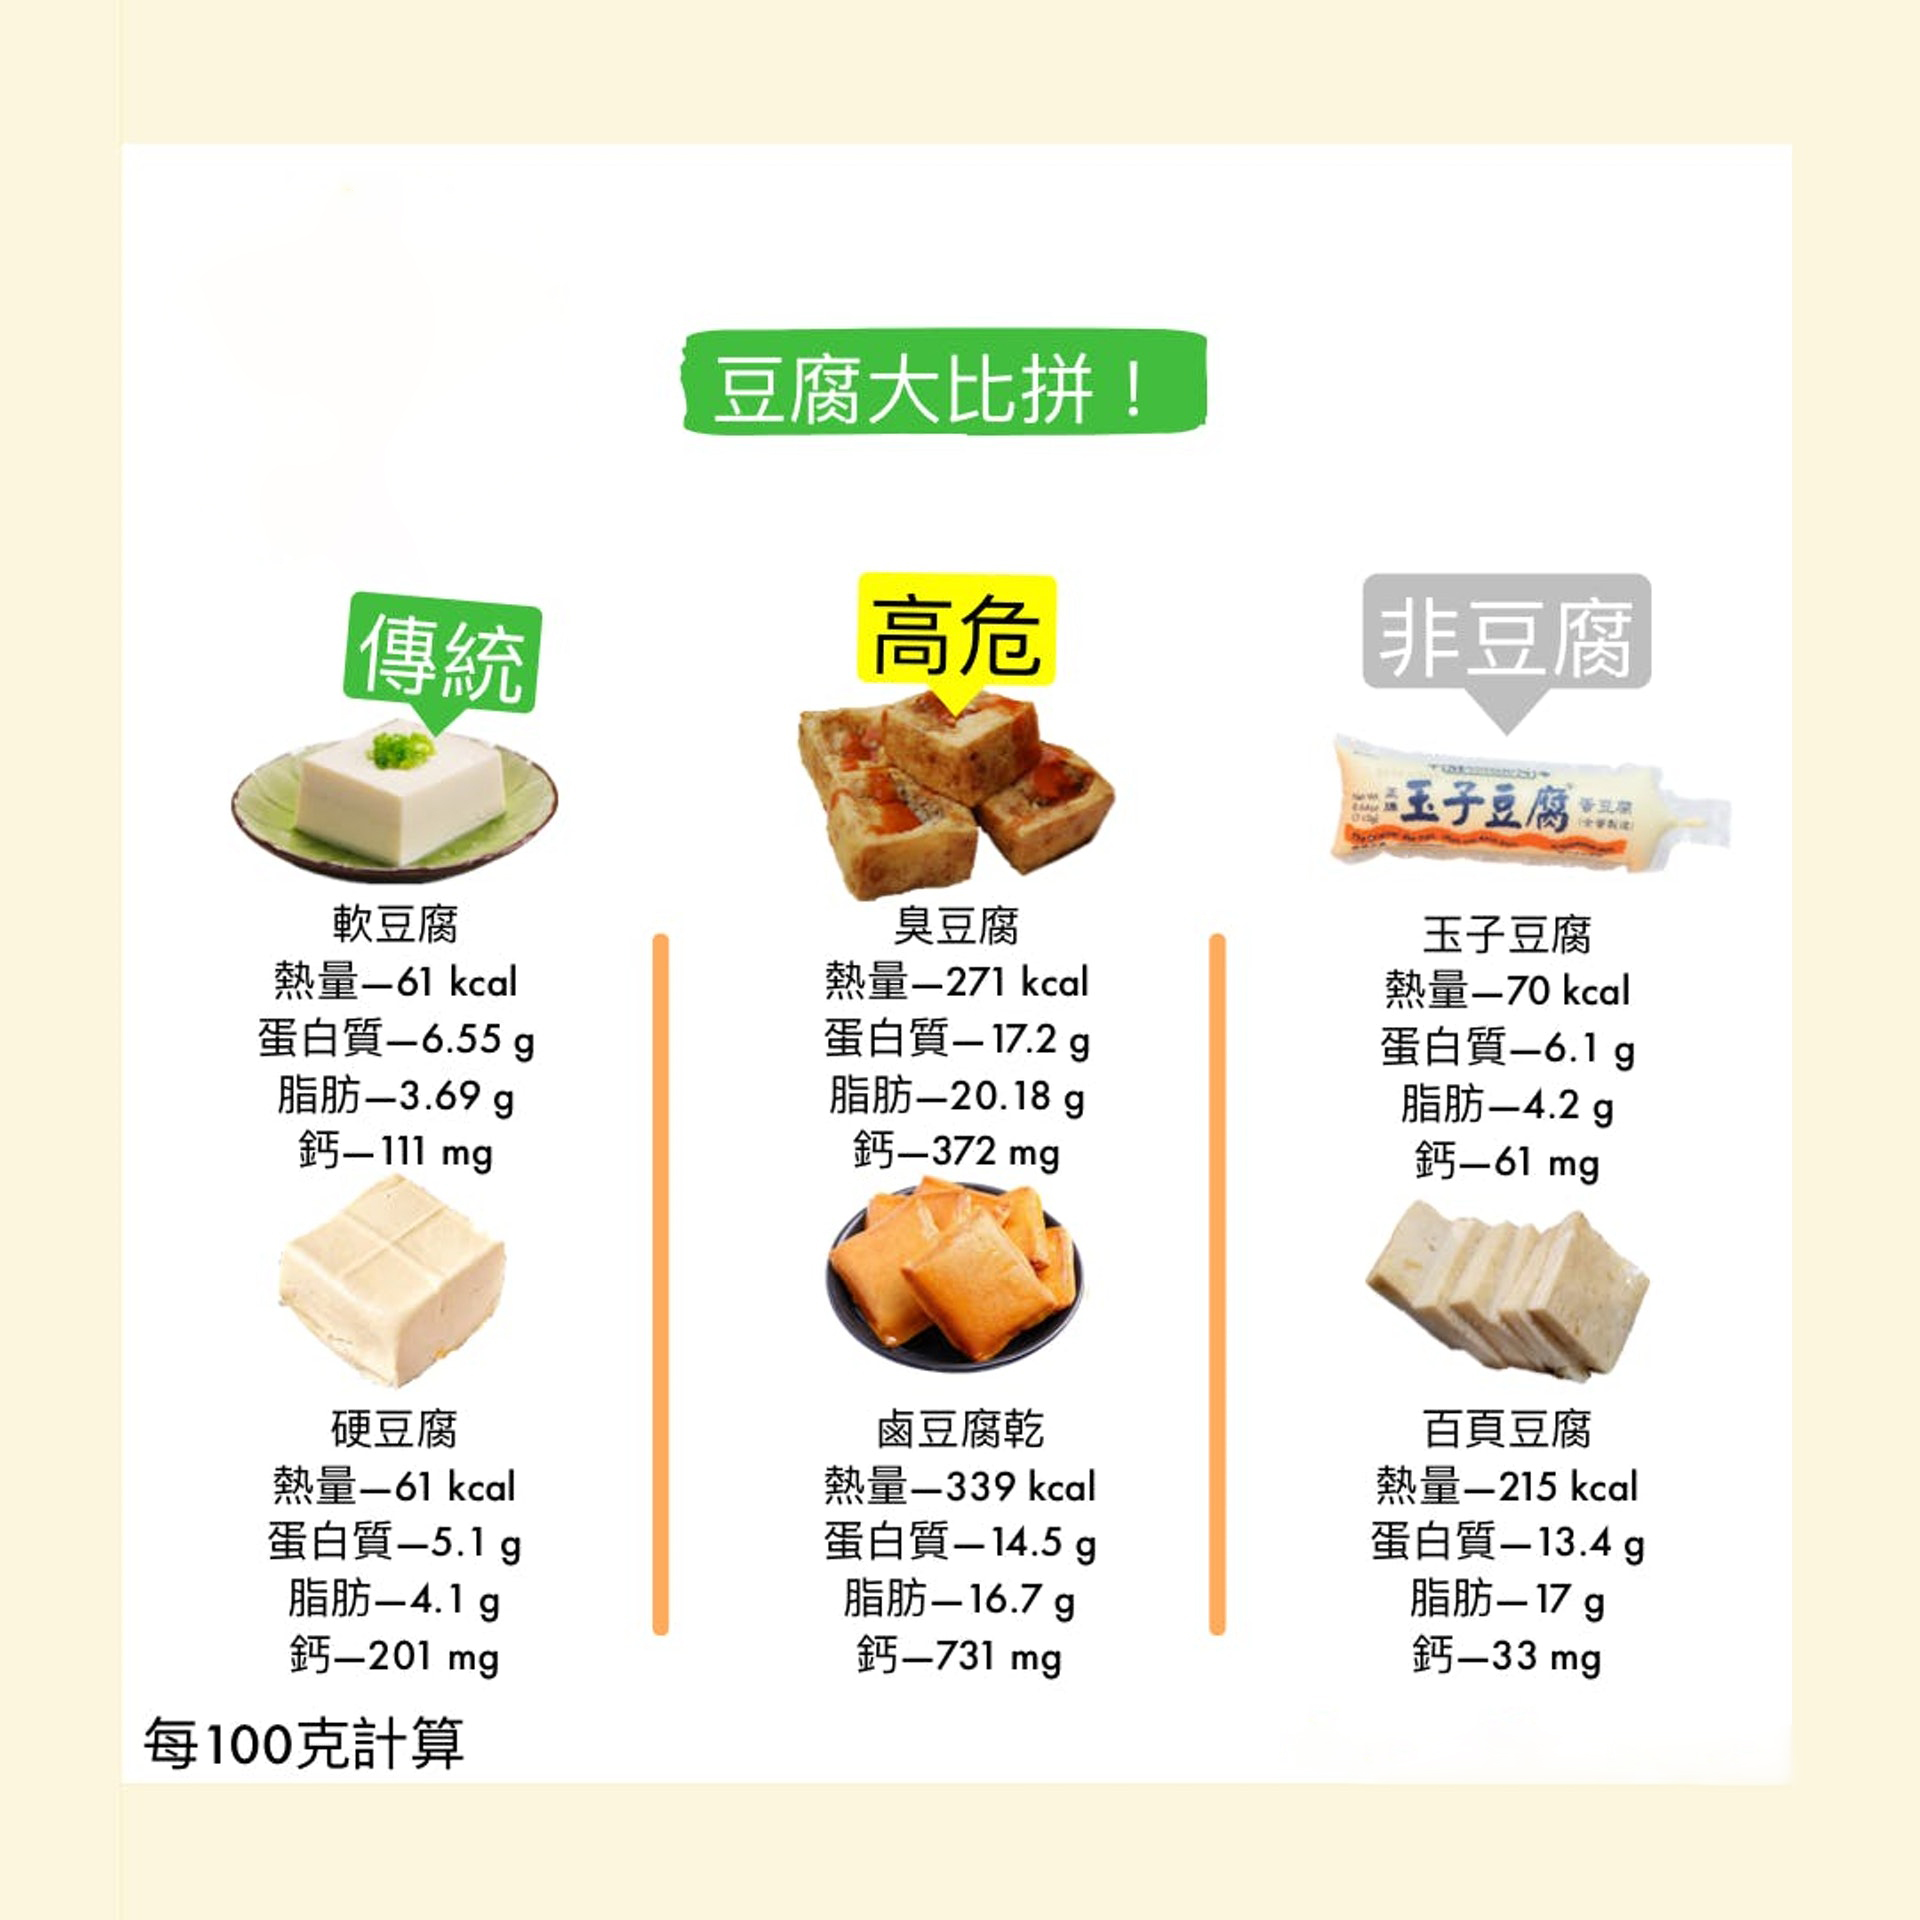 事实上,坊间的百页豆腐是用大豆蛋白再加沙拉油再加上一些食品添加物